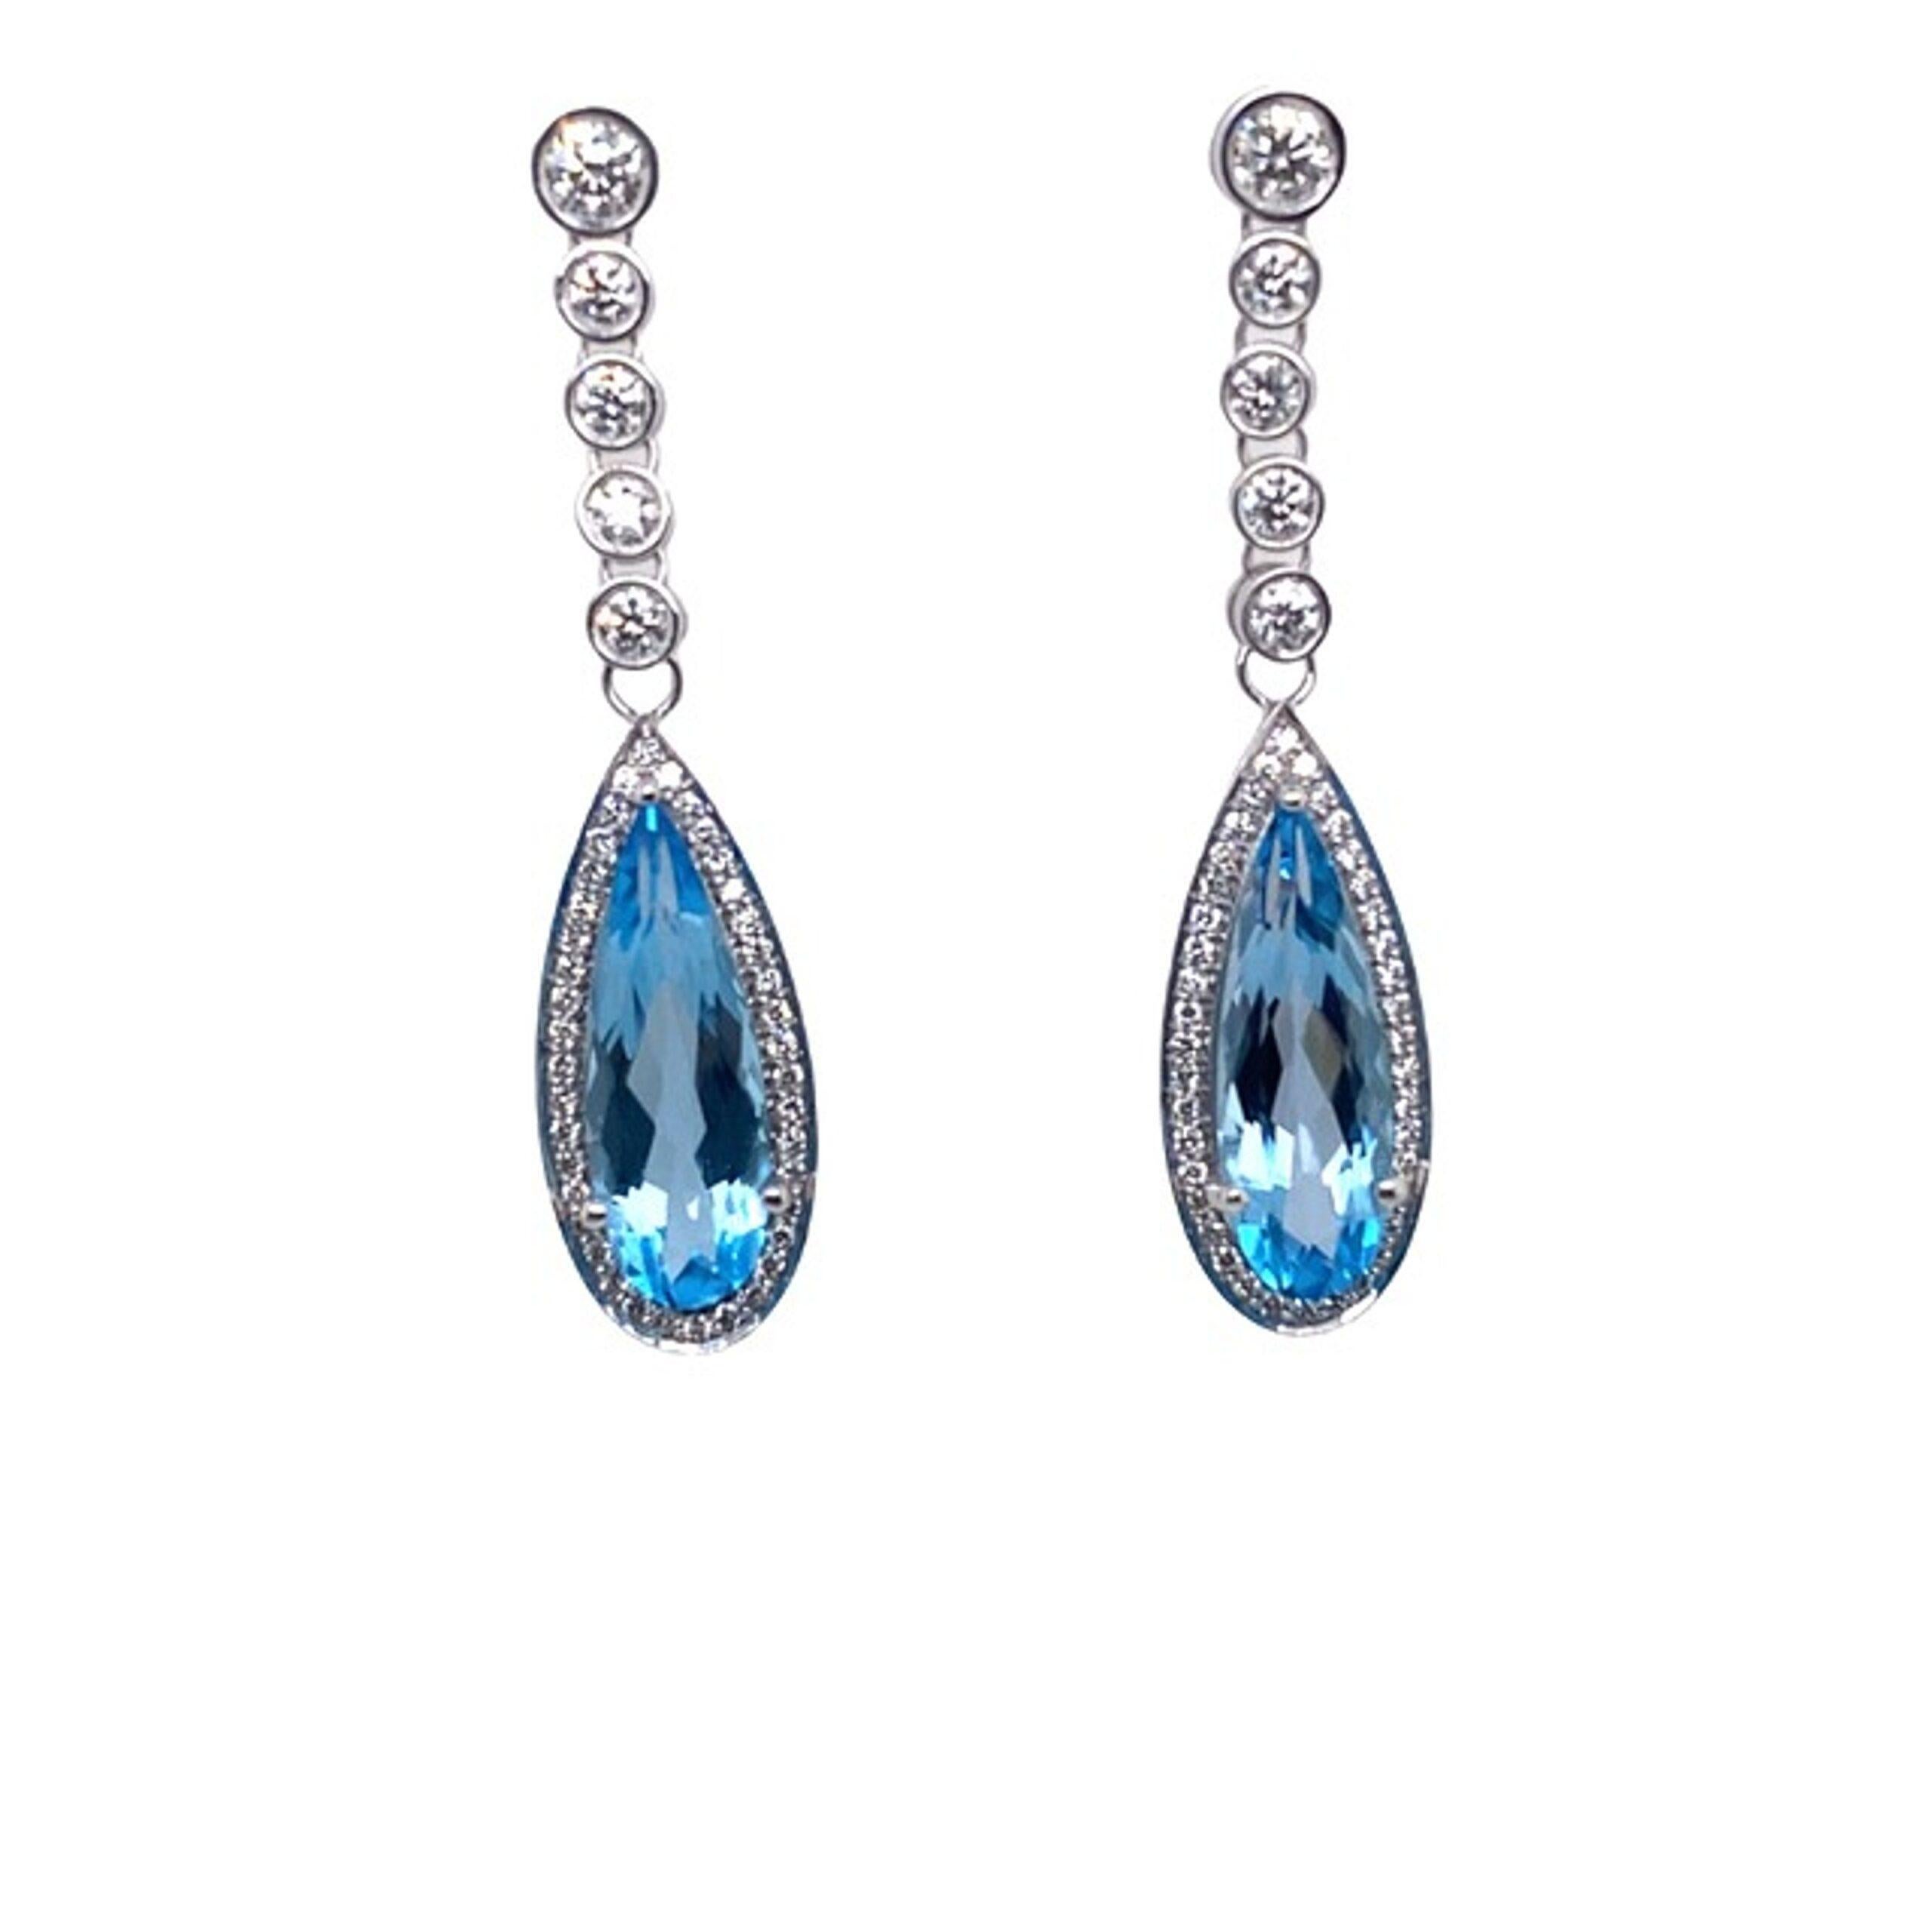 Boucles d'oreilles pendantes en topaze bleue et diamant,  Serti de 2,10ct de diamants F/VS et de 2 topazes bleues en forme de poire de 6,40ct serties dans de l'or blanc 18ct. Fabriqué par Jewellery Cave.

Informations supplémentaires :
Poids total